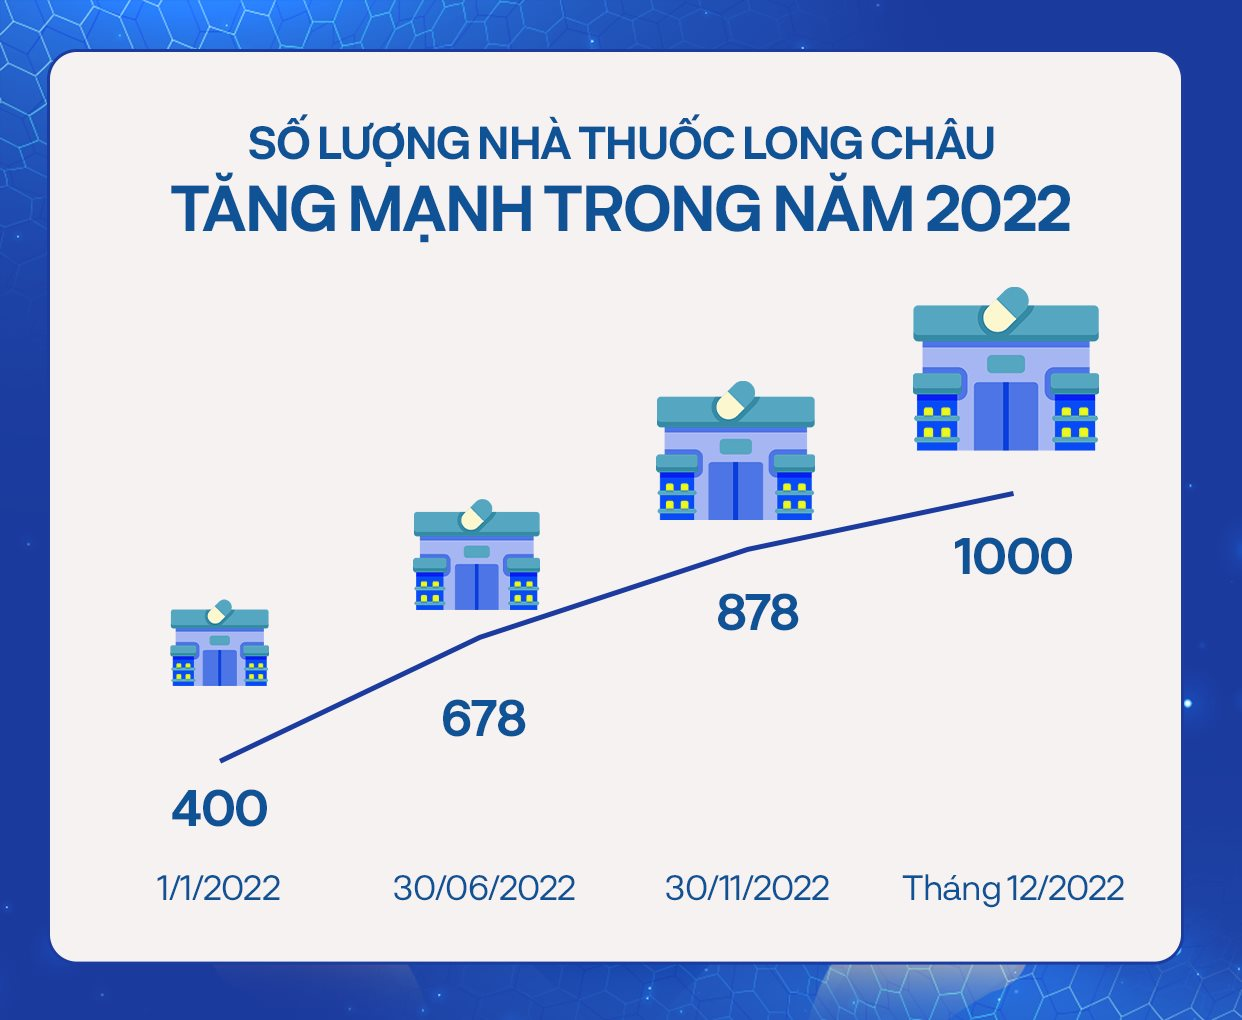 FPT Long Châu huy động vốn từ đâu để mở chuỗi thần tốc, từ 400 lên 1.000 nhà thuốc chỉ trong năm 2022? - Ảnh 2.